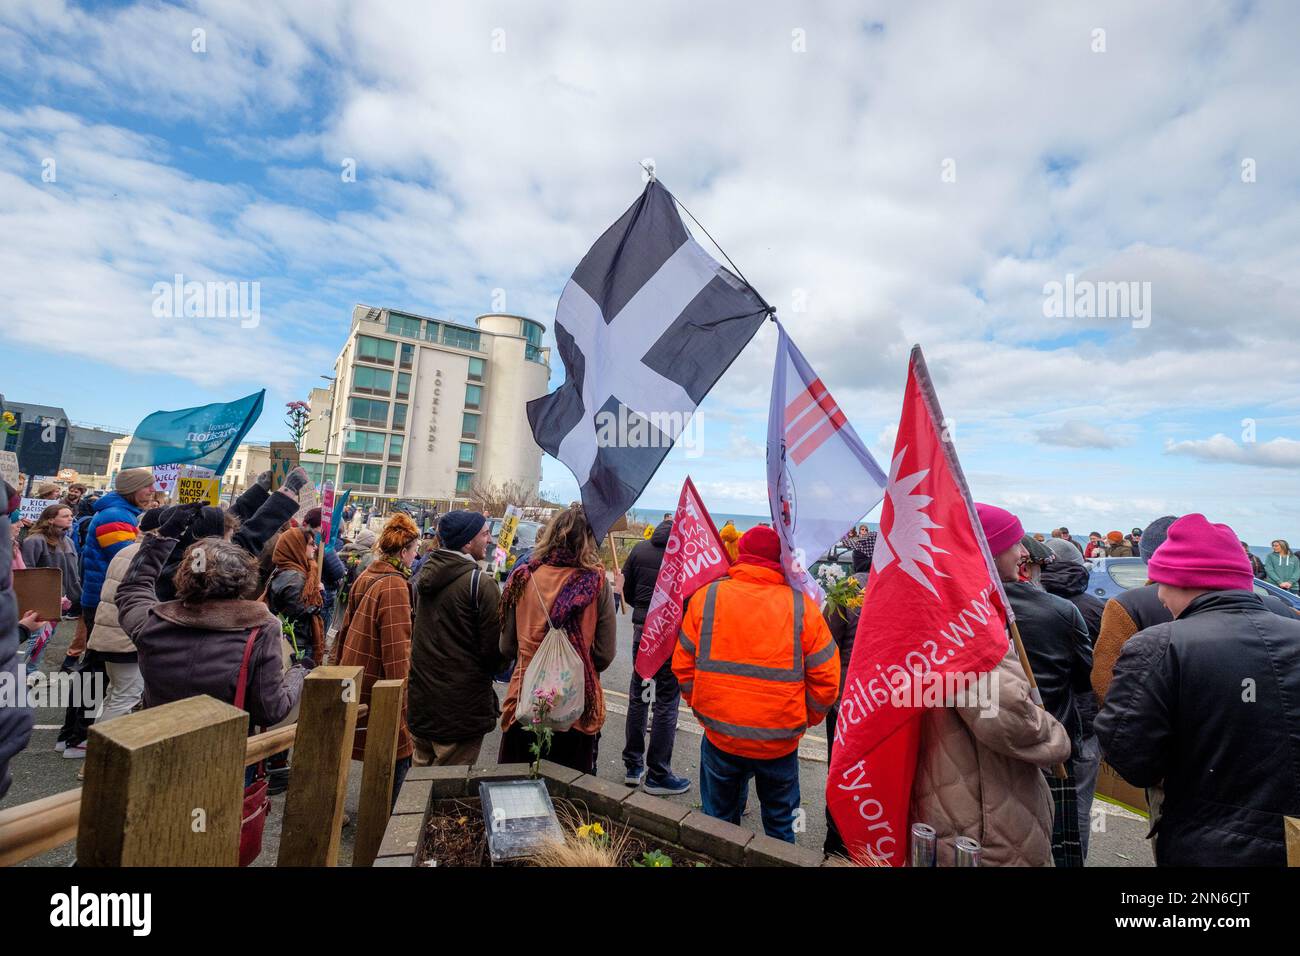 Antifaschisten von Cornwall Resists stehen vor dem Beresford Hotel in Newquay, Cornwall, wo Flüchtlinge untergebracht sind, während Demonstranten der rechtsextremen Gruppe Patriotic Alternative dagegen protestieren. Foto: Samstag, 25. Februar 2023. Stockfoto